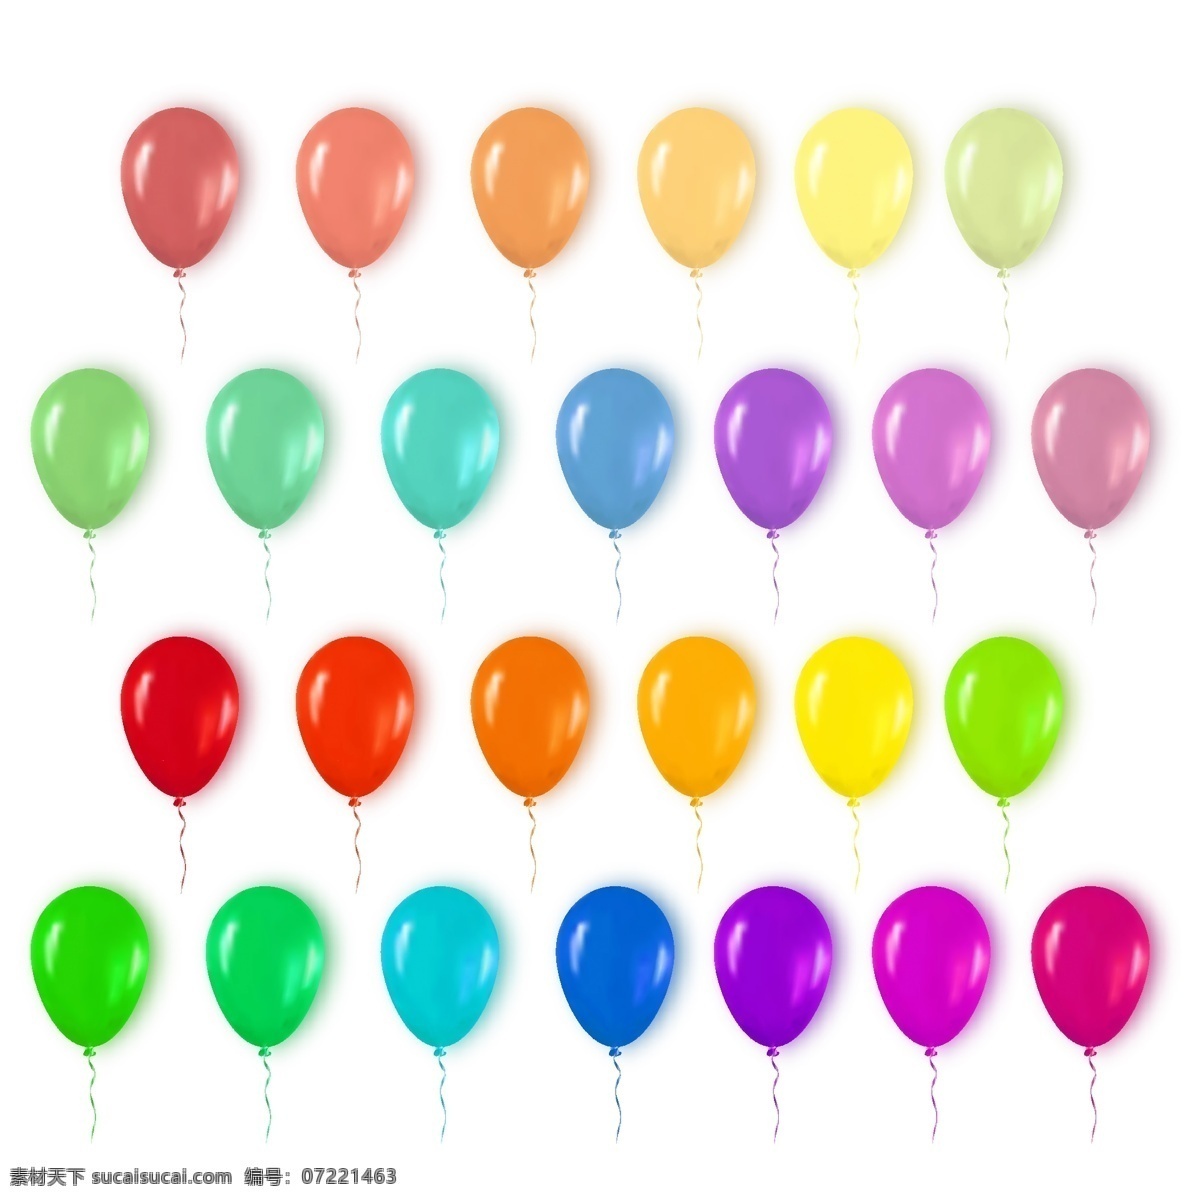 矢量心形气球 矢量彩色气球 矢量活动气球 矢量节日气球 卡通素材 可爱 手绘素材 儿童素材 幼儿园素材 卡通 矢量 抽象设计 时尚 矢量素材 生日 贺卡 节日 彩色气球 卡通气球 矢量气球 气球素材 五颜六色 炫丽气球 蓝色气球 红色气球 黄色气球